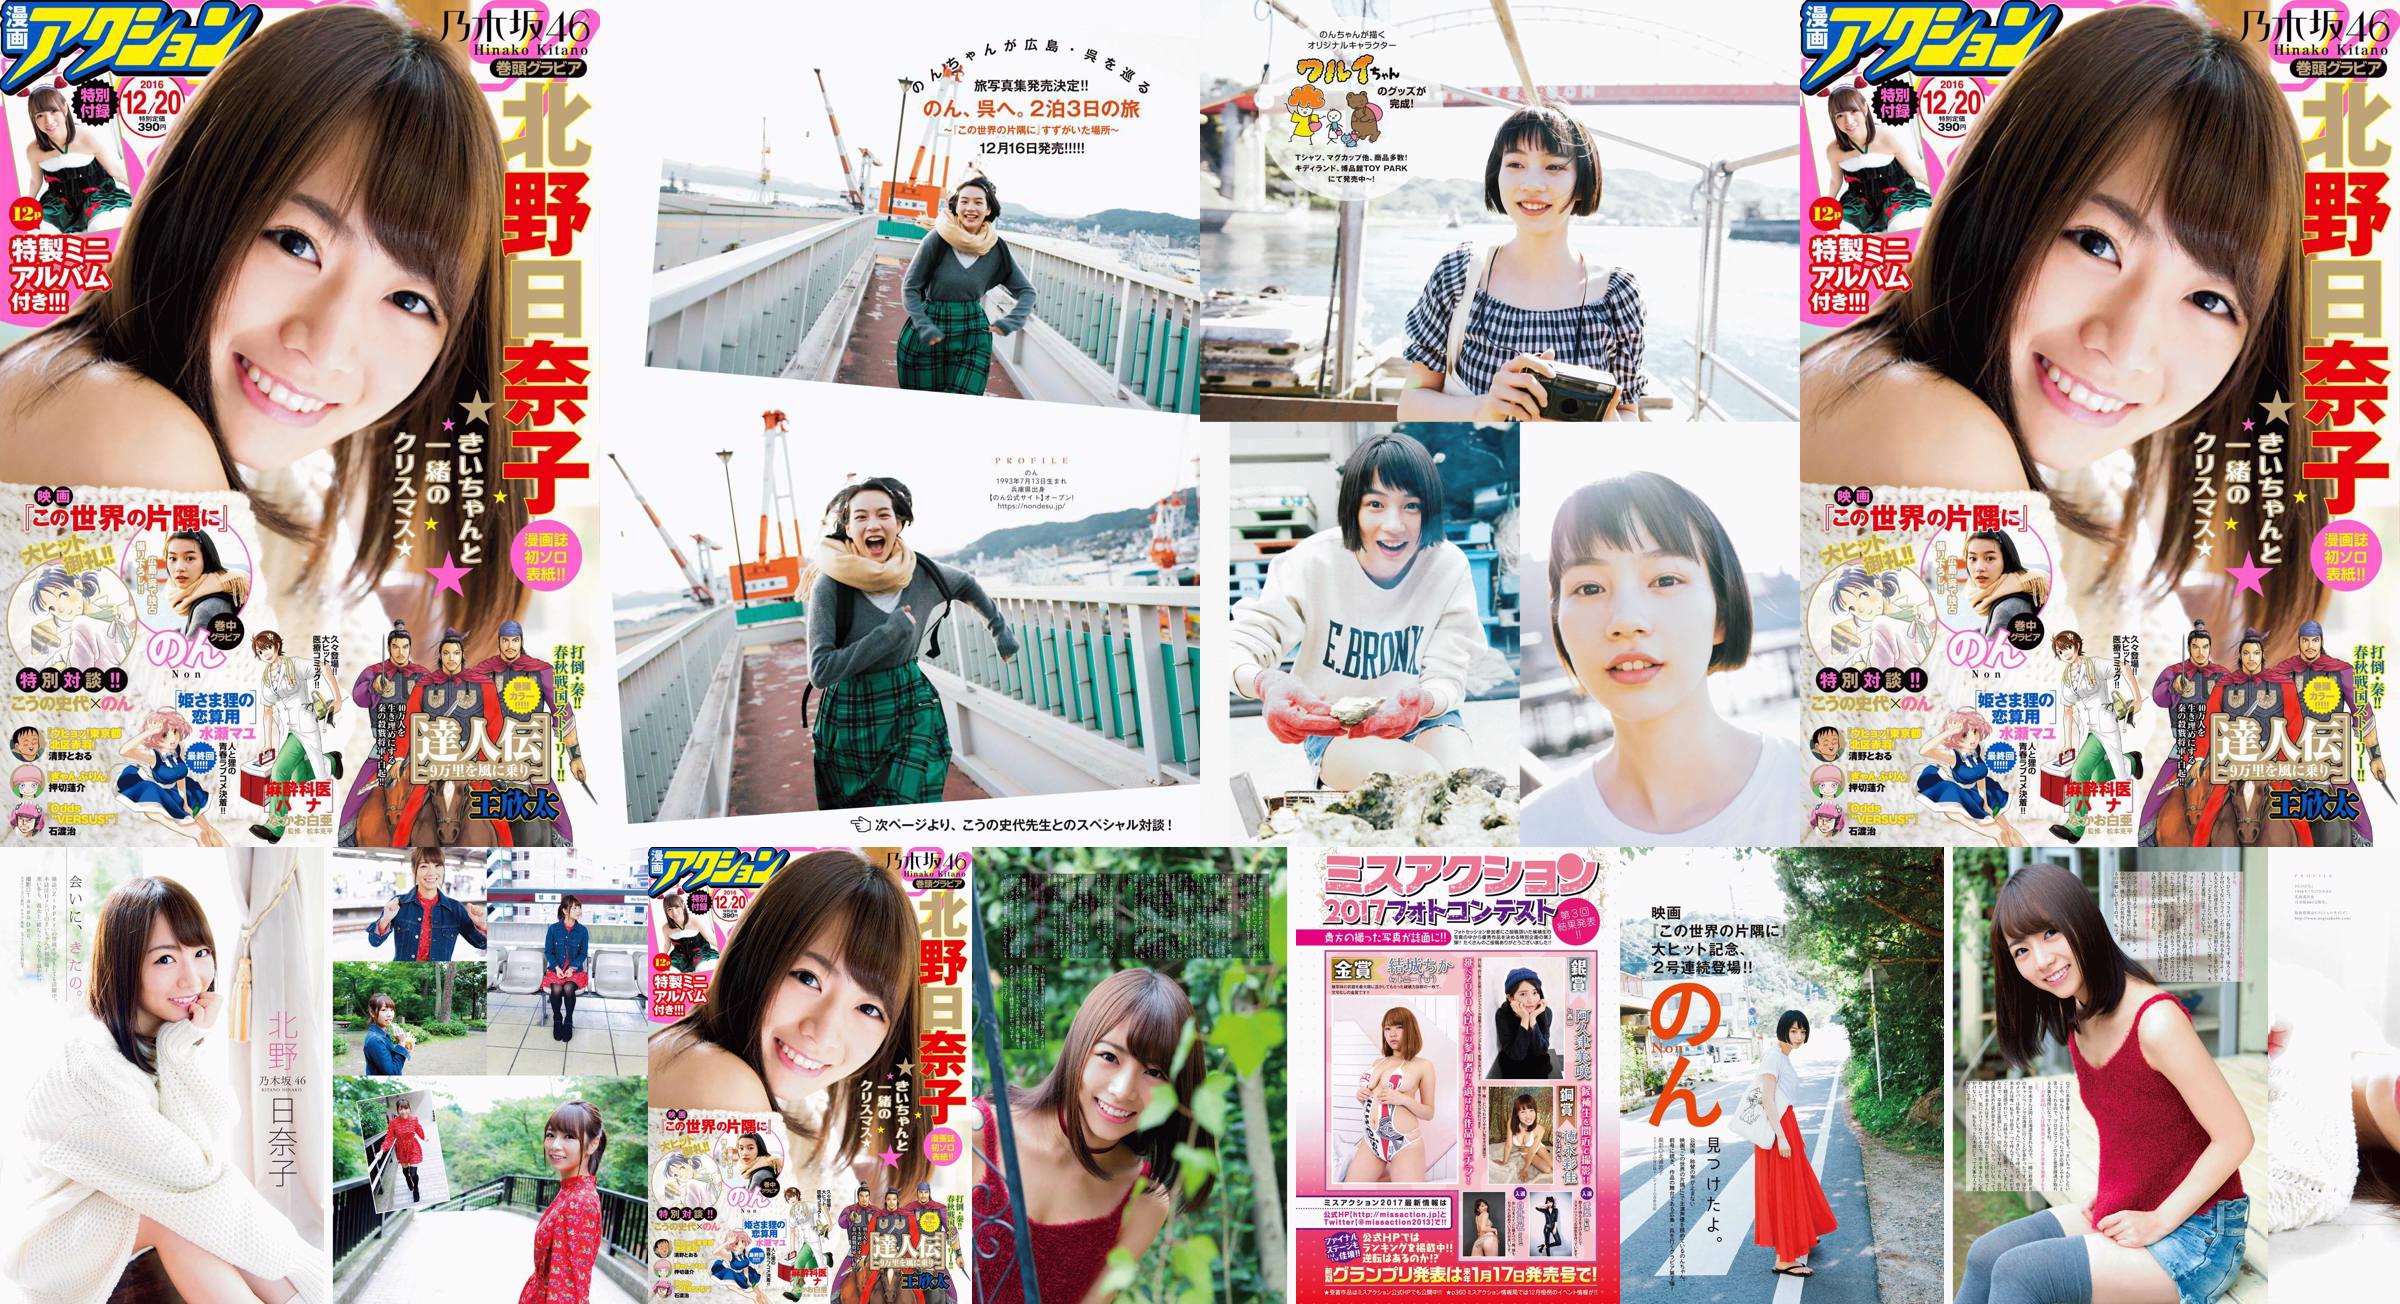 [Manga Action] Kitano Hinako のん 2016 No.24 Photo Magazine No.b4a788 Page 3